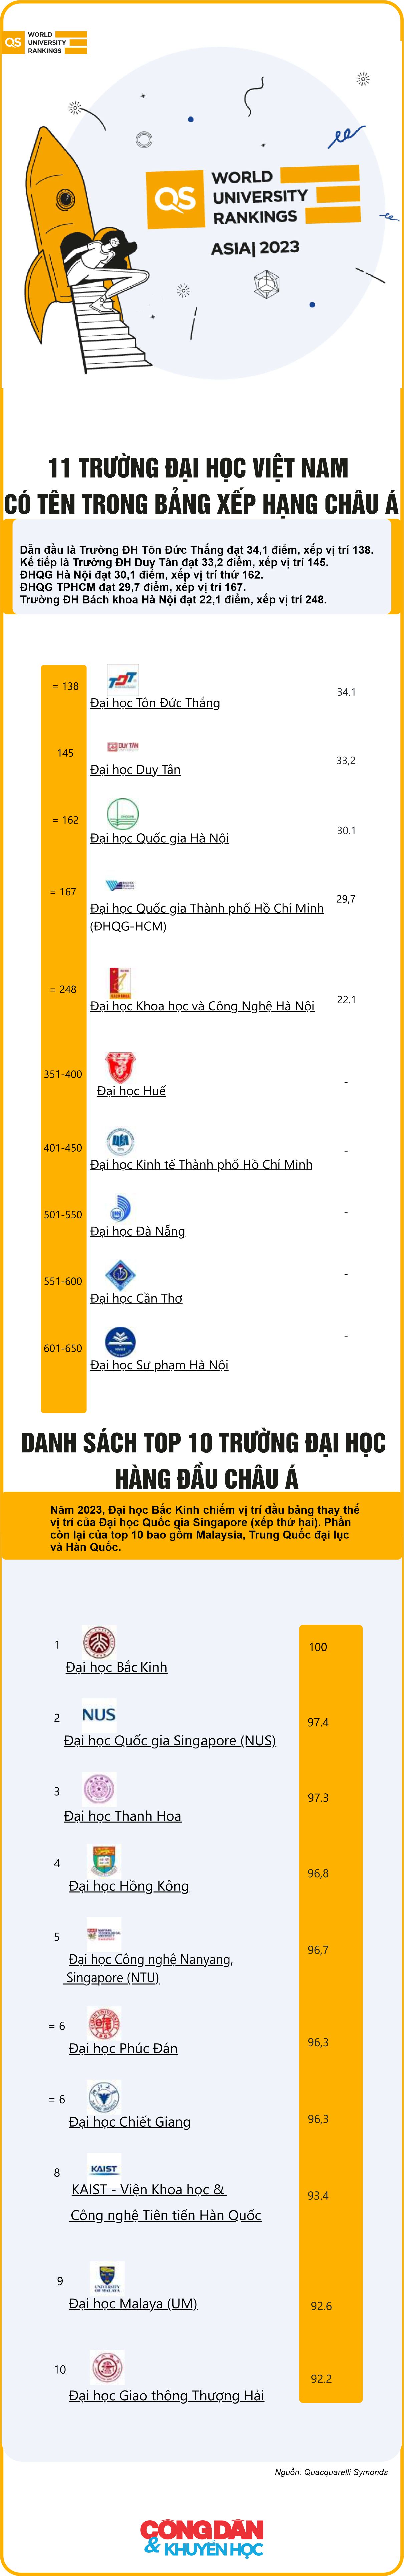 [Infographic] 11 trường đại học Việt Nam có tên trong bảng xếp hạng châu Á - Ảnh 1.